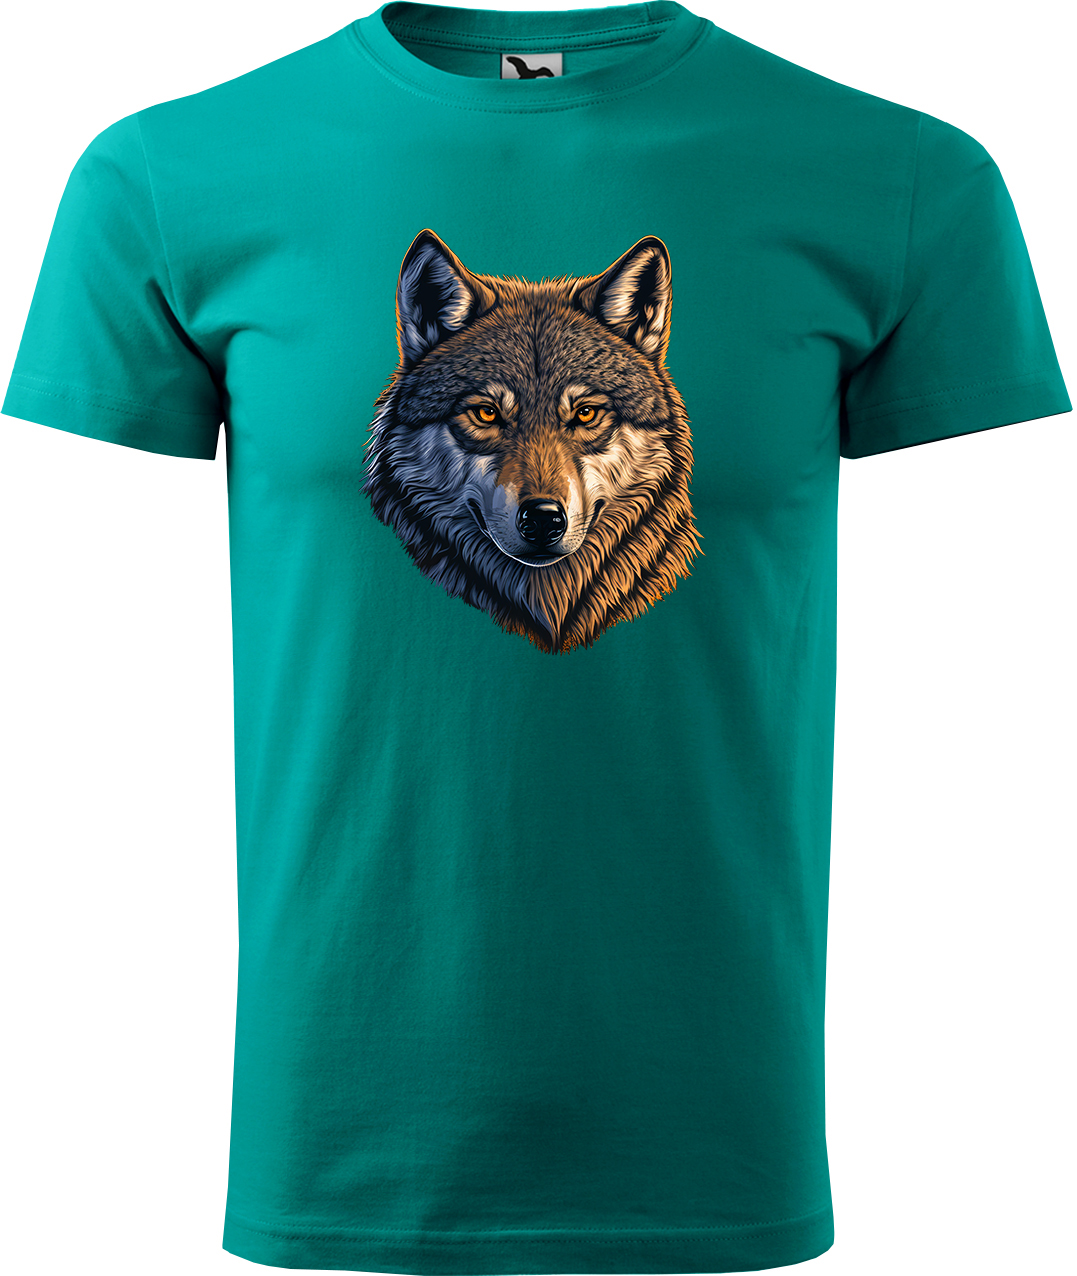 Pánské tričko s vlkem - Hlava vlka Velikost: L, Barva: Emerald (19), Střih: pánský